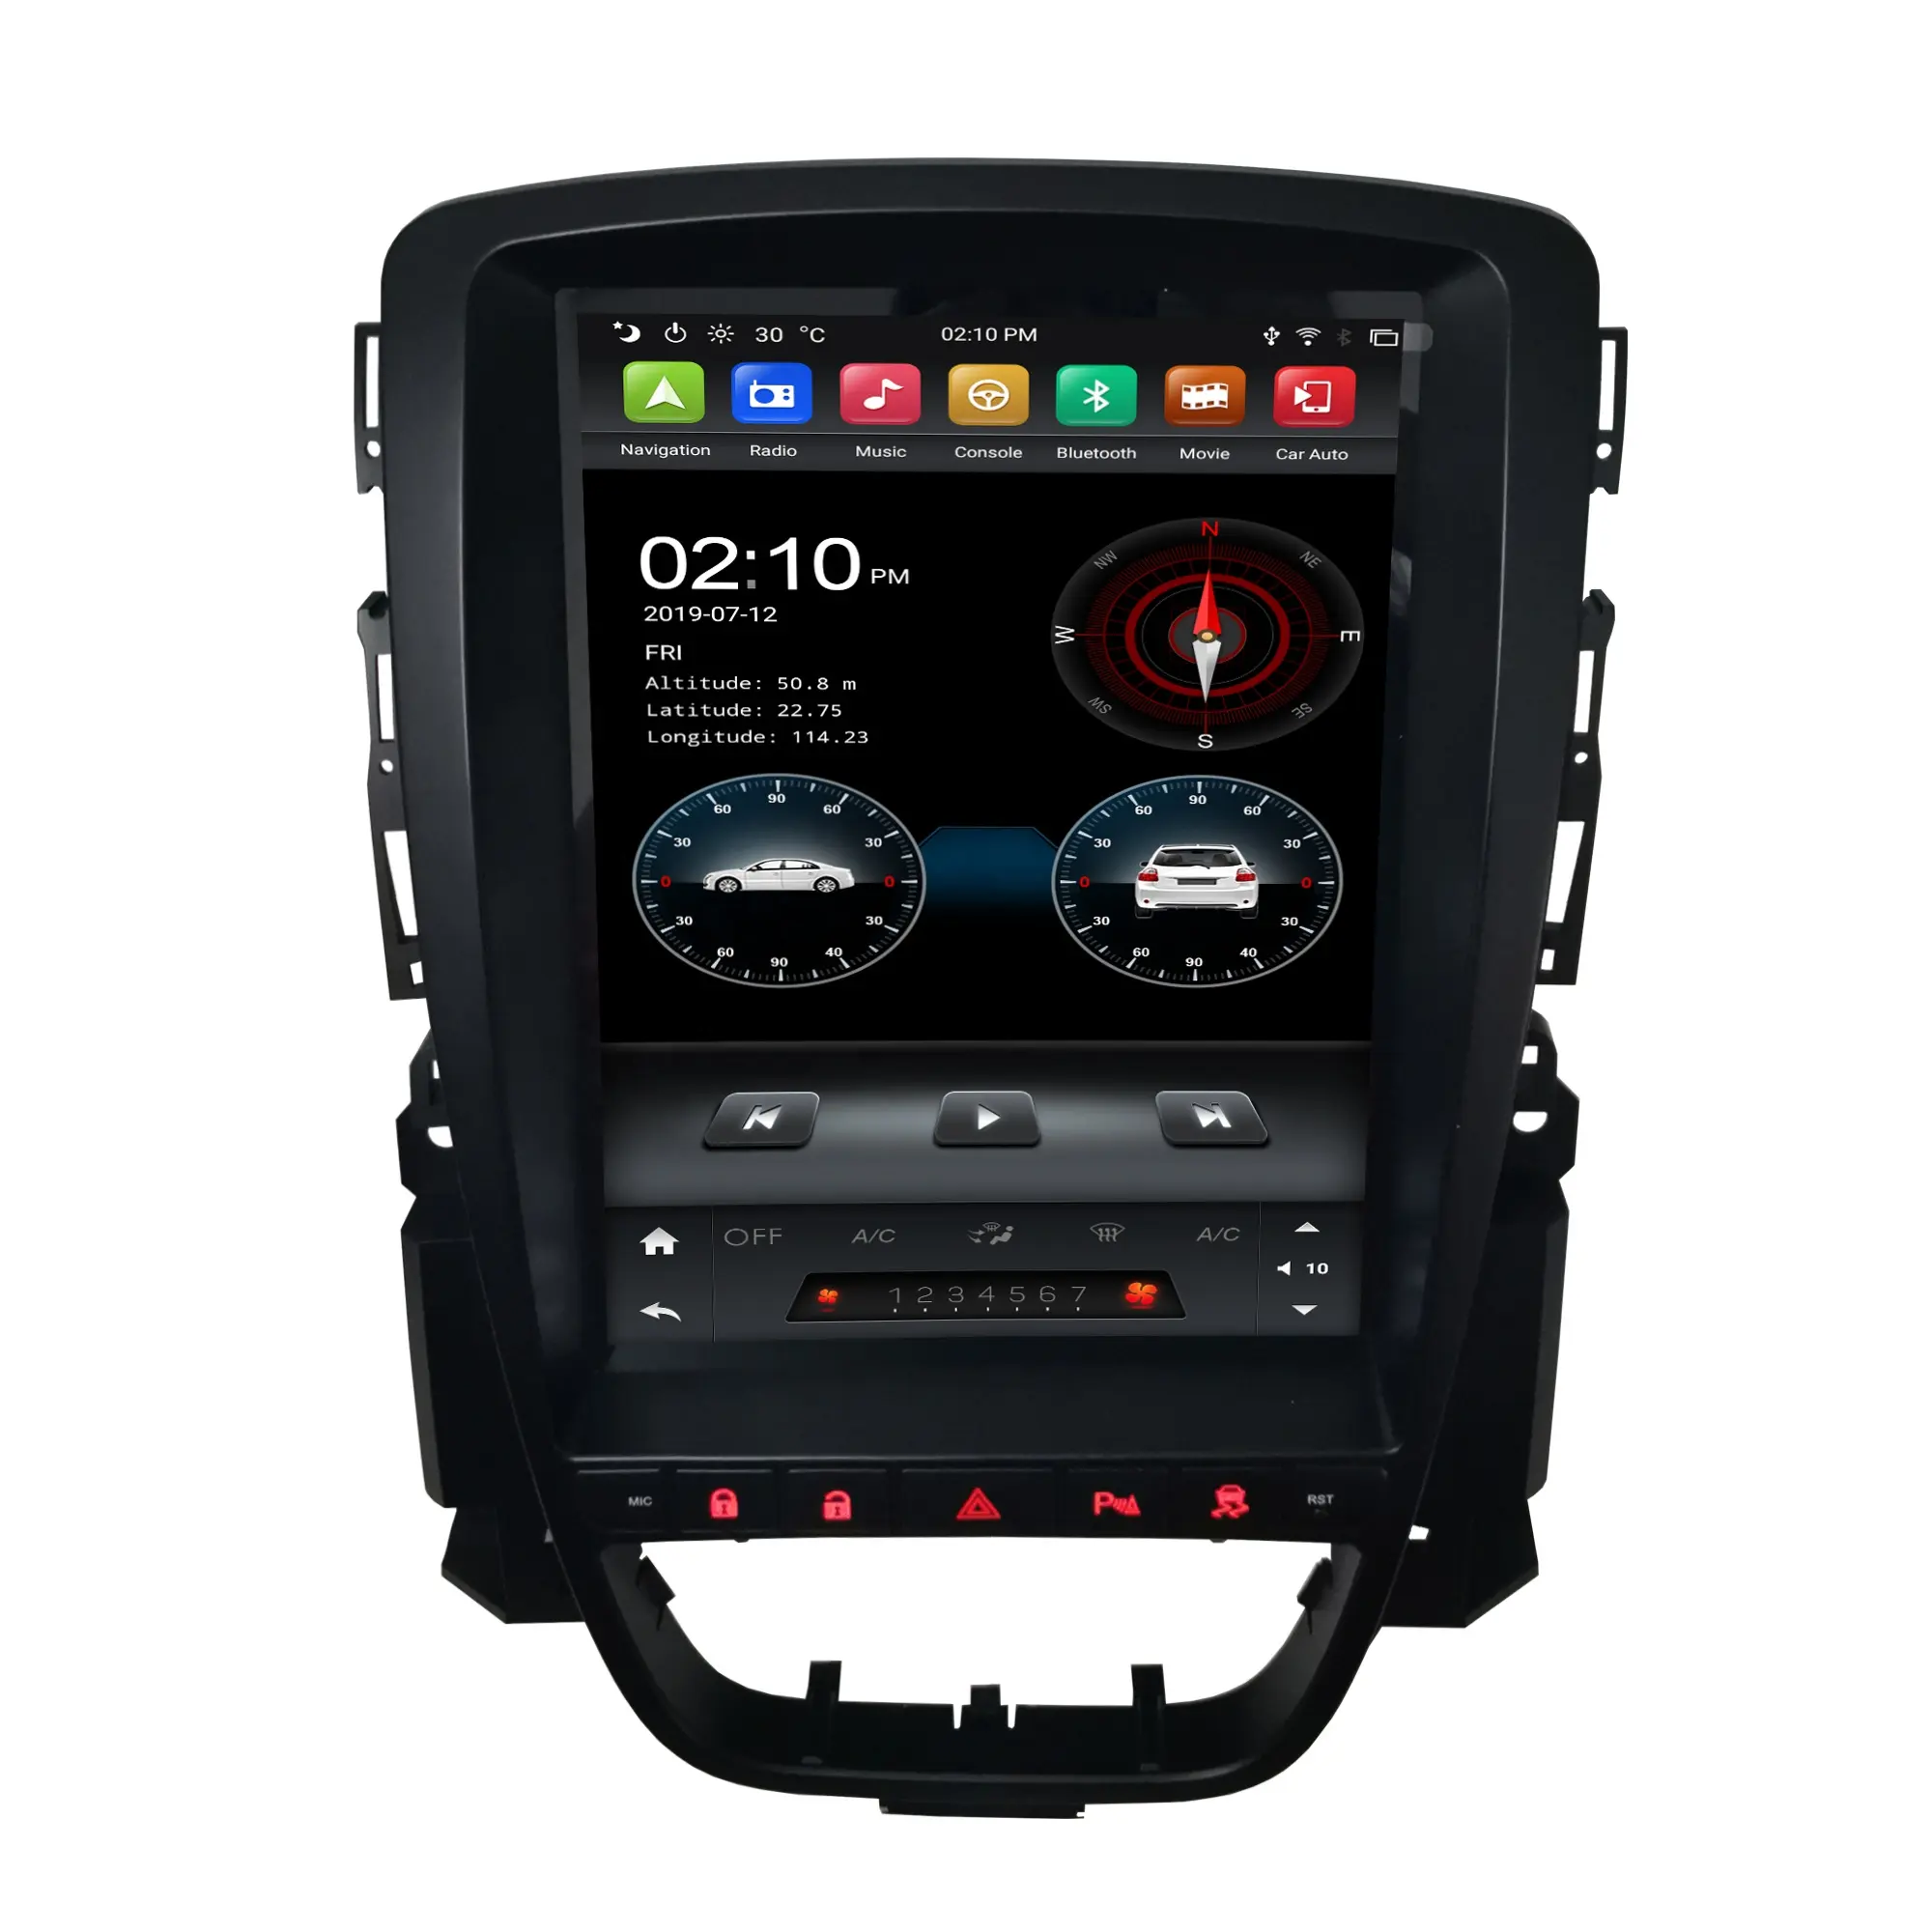 Klyde-REPRODUCTOR de pantalla táctil de 9,7 "para coche estilo tesla, para ASTRA J 2012 2013 2014 PX6 64GB, ESTÉREO